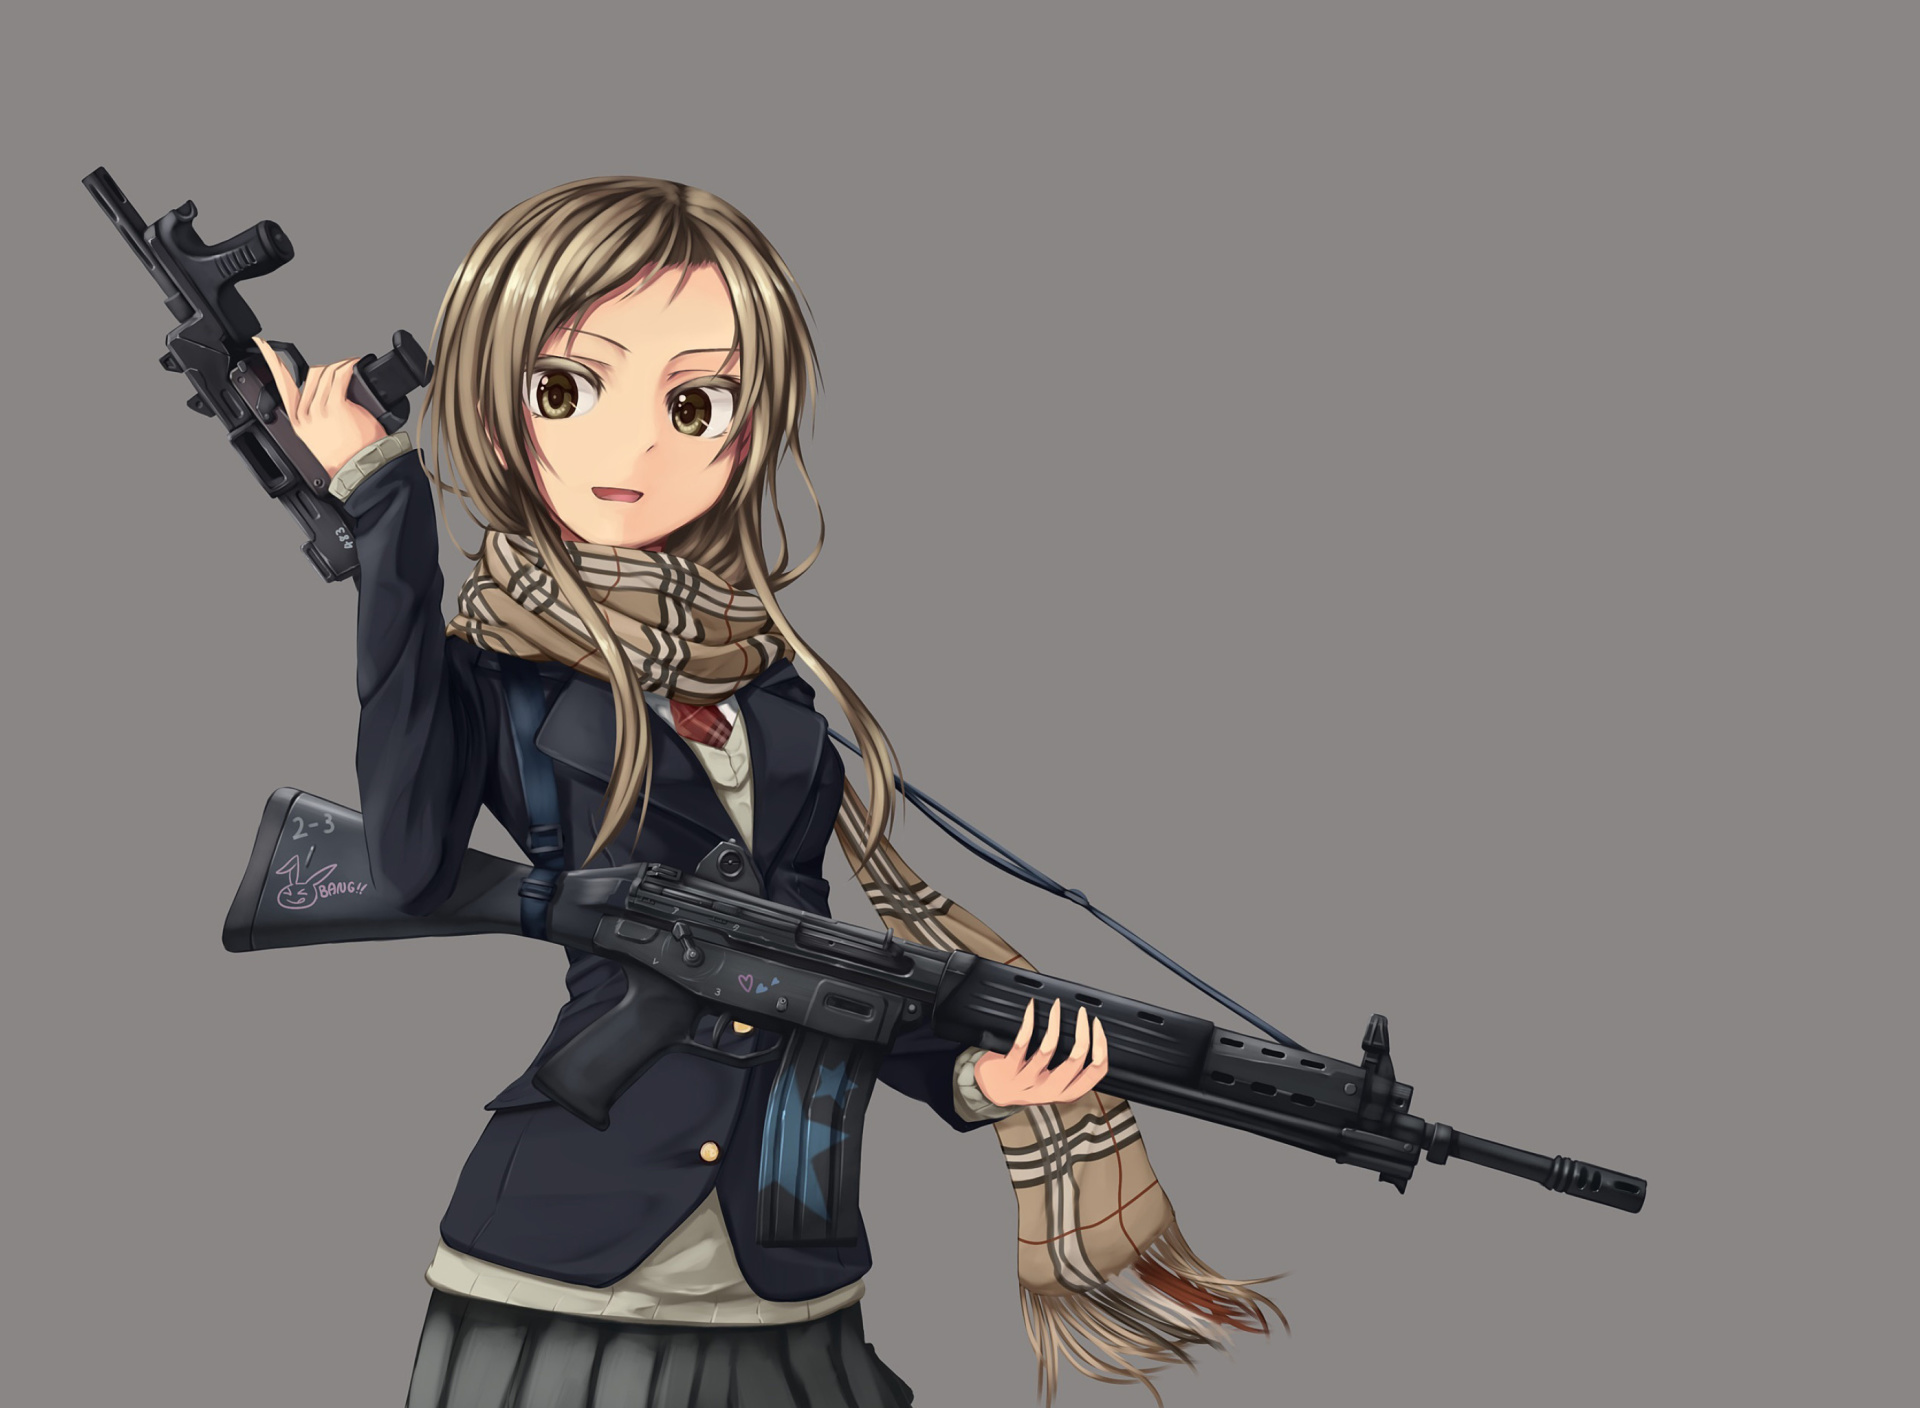 Обои Anime girl with gun 1920x1408